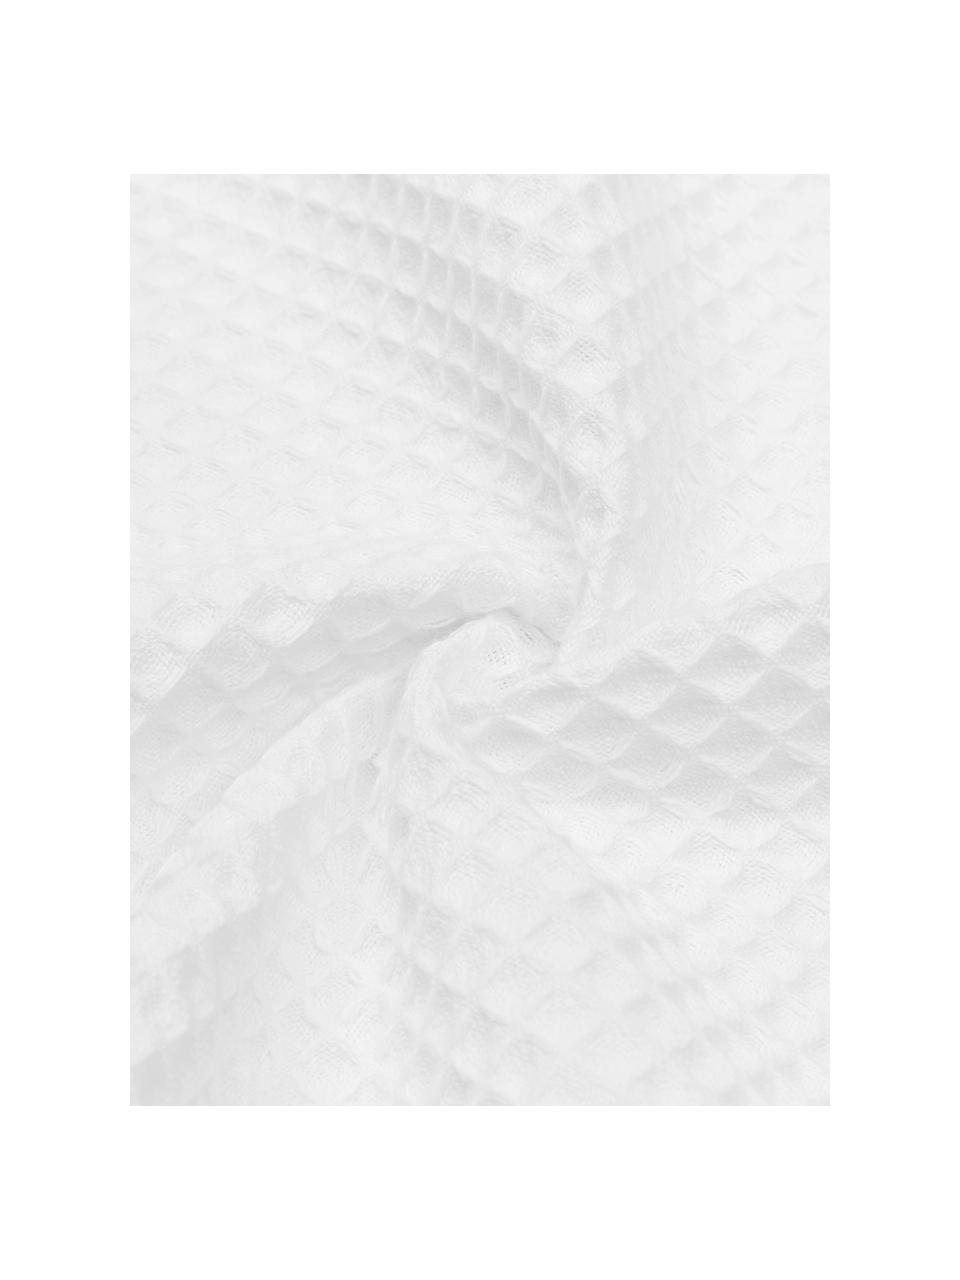 Tenký ručník s vaflovou strukturou Karima, různé velikosti, Bílá